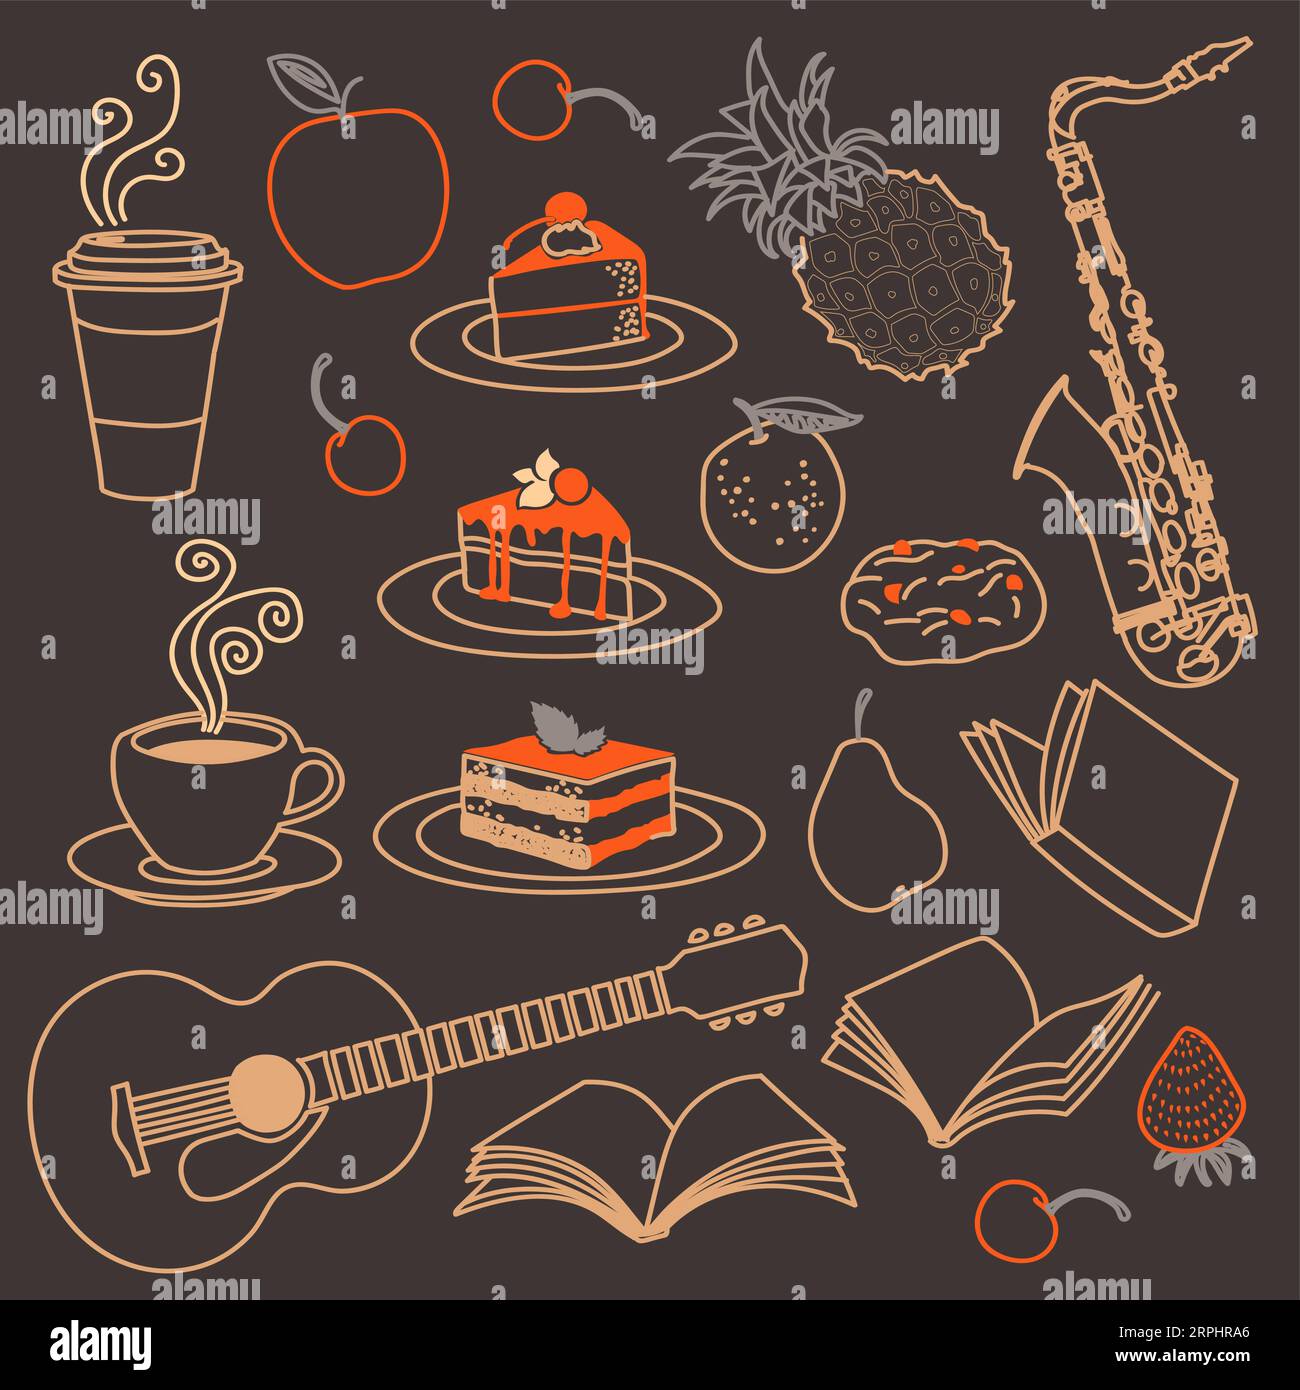 Illustrazioni vettoriali di dolci e tazze di caffè, biscotti al cioccolato. Dolci dolci e frutta, libri e strumenti musicali Illustrazione Vettoriale